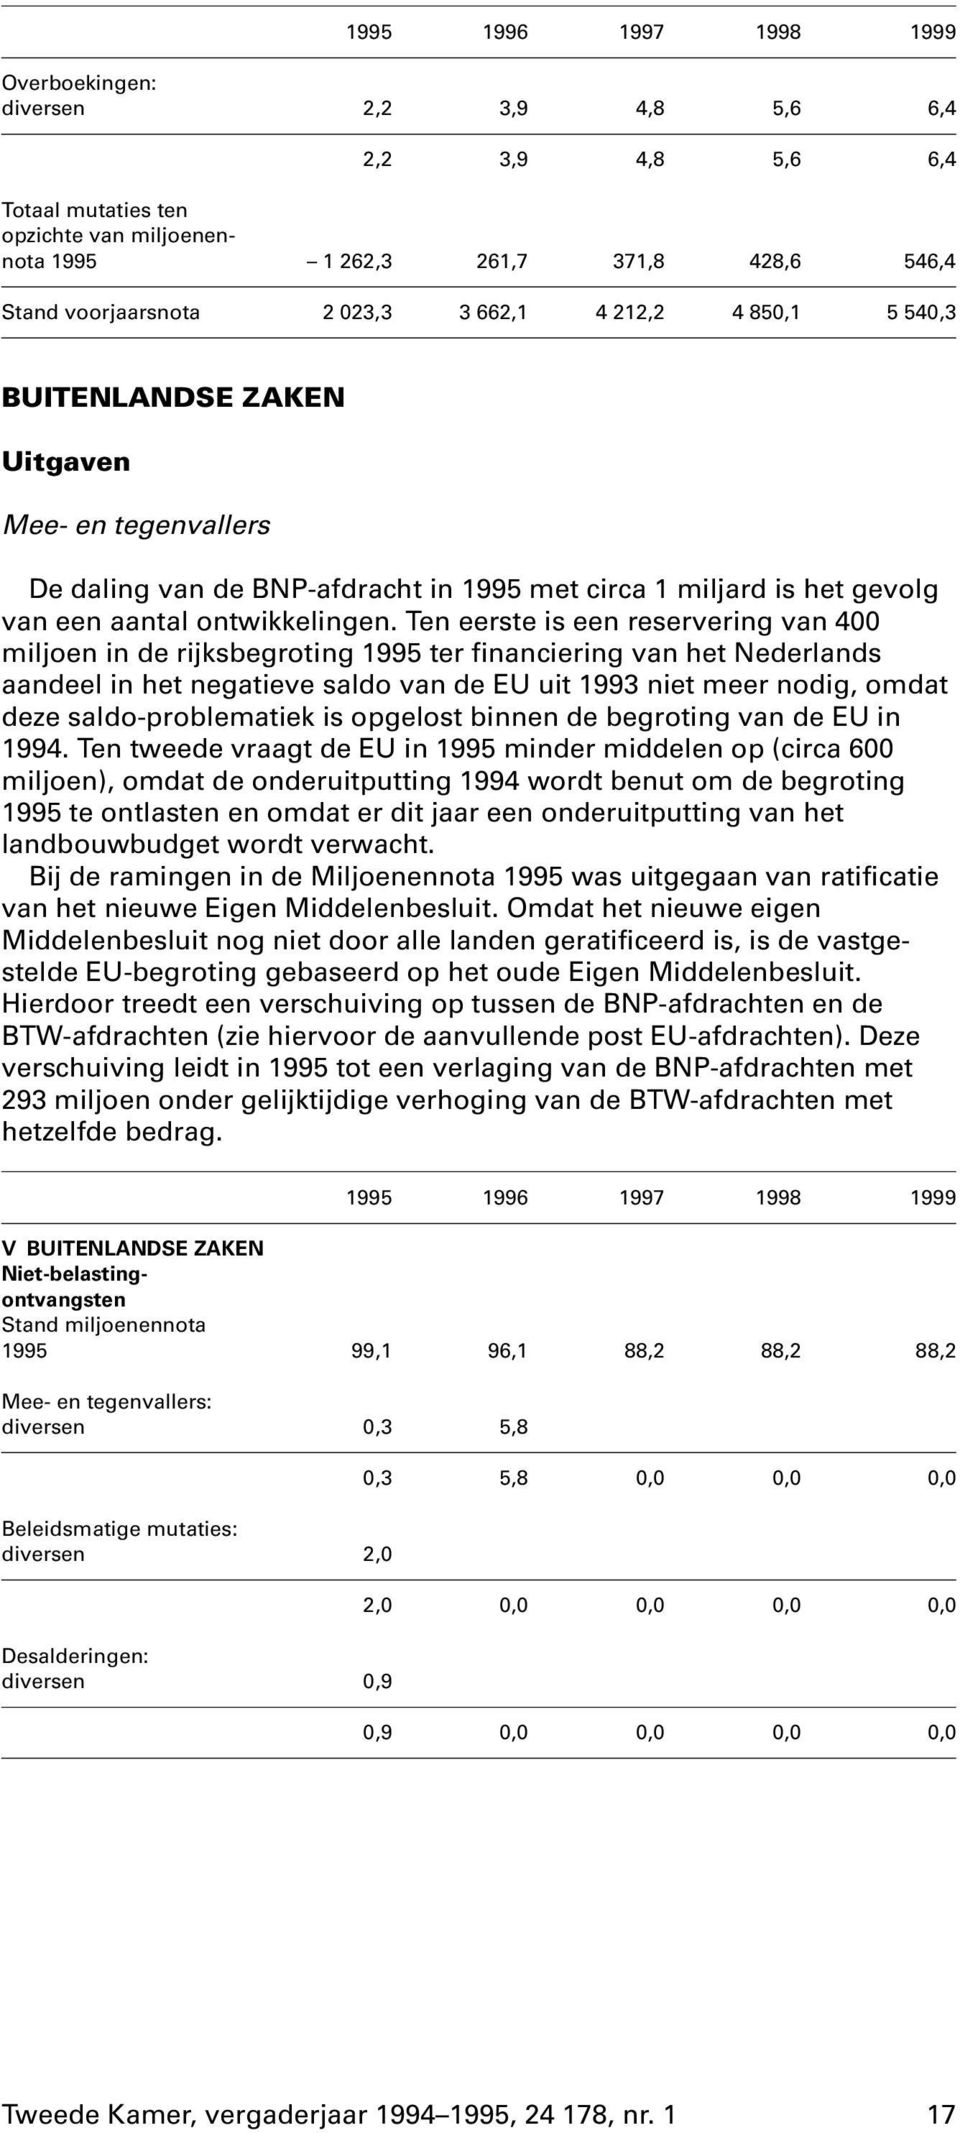 Ten eerste is een reservering van 400 miljoen in de rijksbegroting 1995 ter financiering van het Nederlands aandeel in het negatieve saldo van de EU uit 1993 niet meer nodig, omdat deze